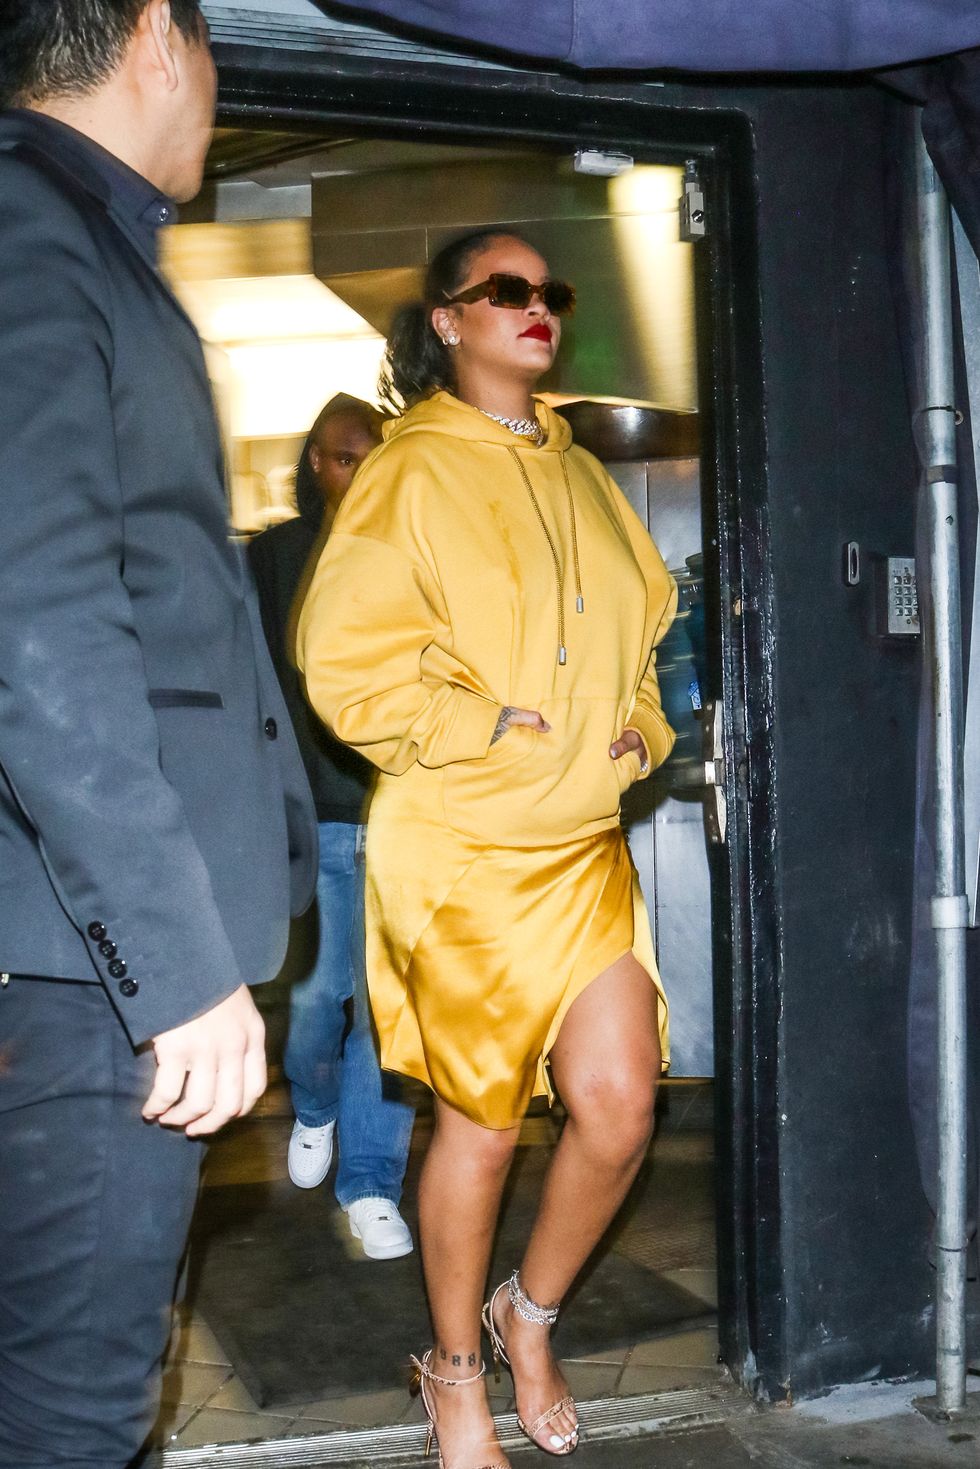 Rihanna's White Fuzzy Heels January 2019